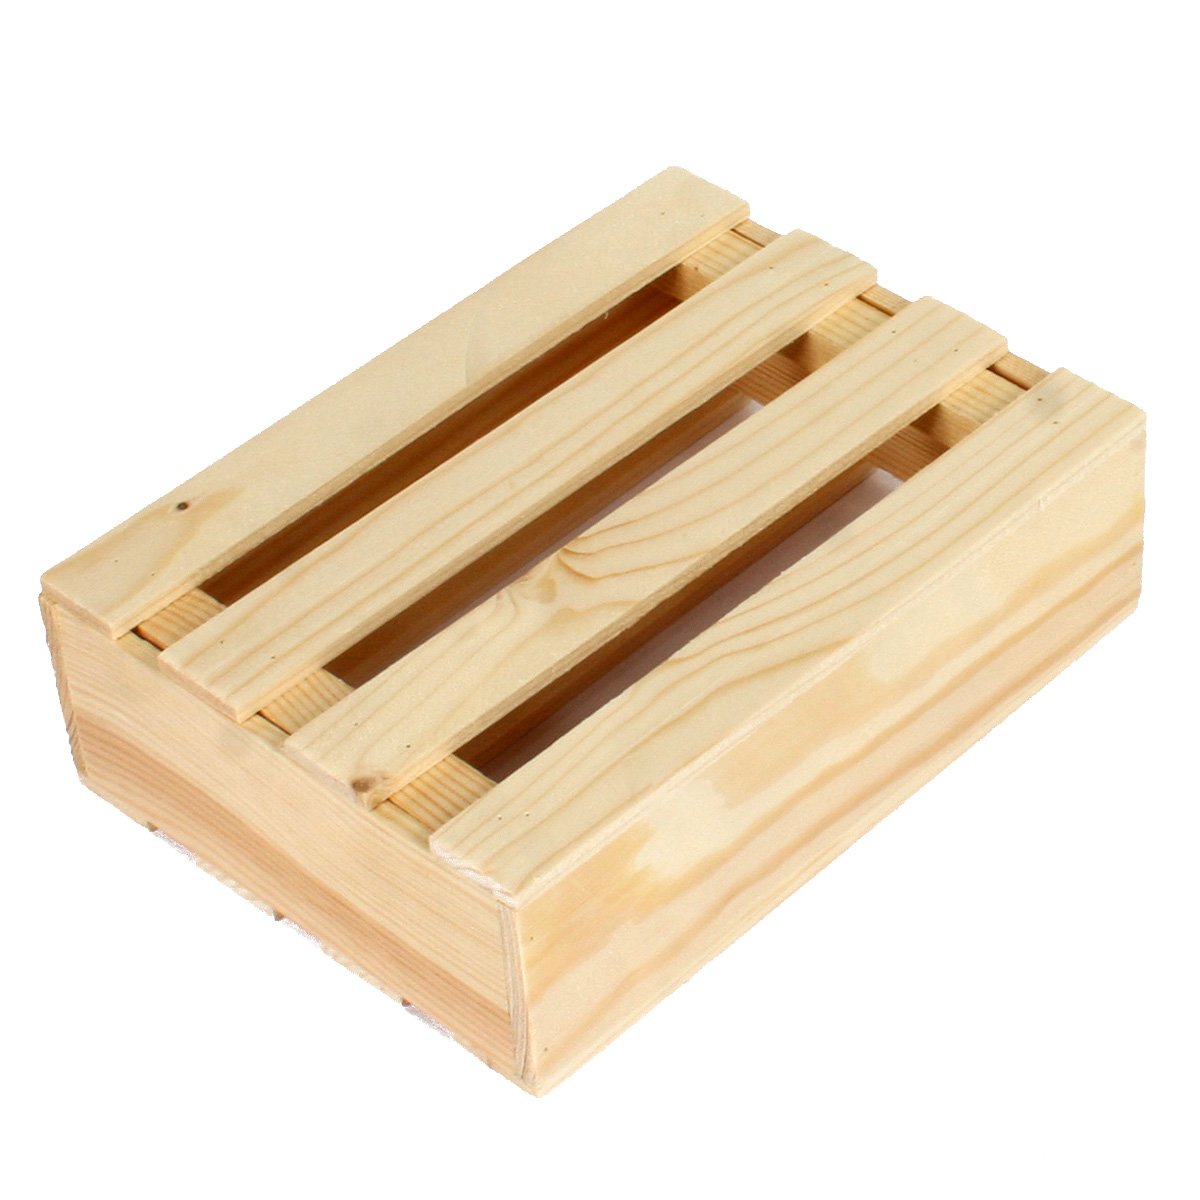 Коробка деревянная Grand Gift 303 прямоугольная с крышкой 22,5х16,5х7 см подарочная коробка с отделением для сладостей подарочных наборов цветочных композиций